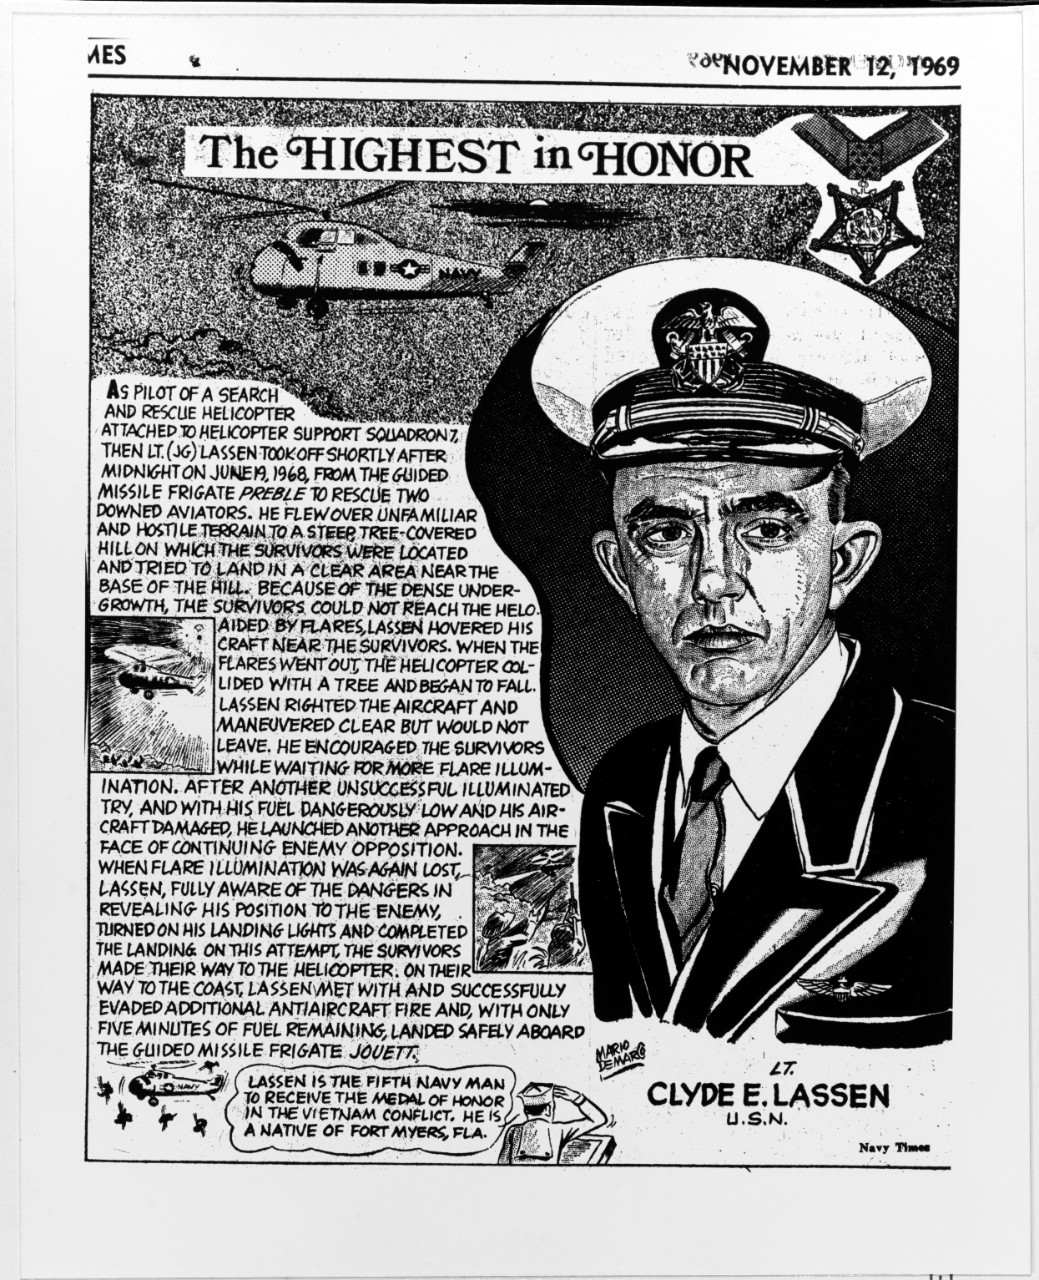 Lieutenant Clyde E. Lassen, USN